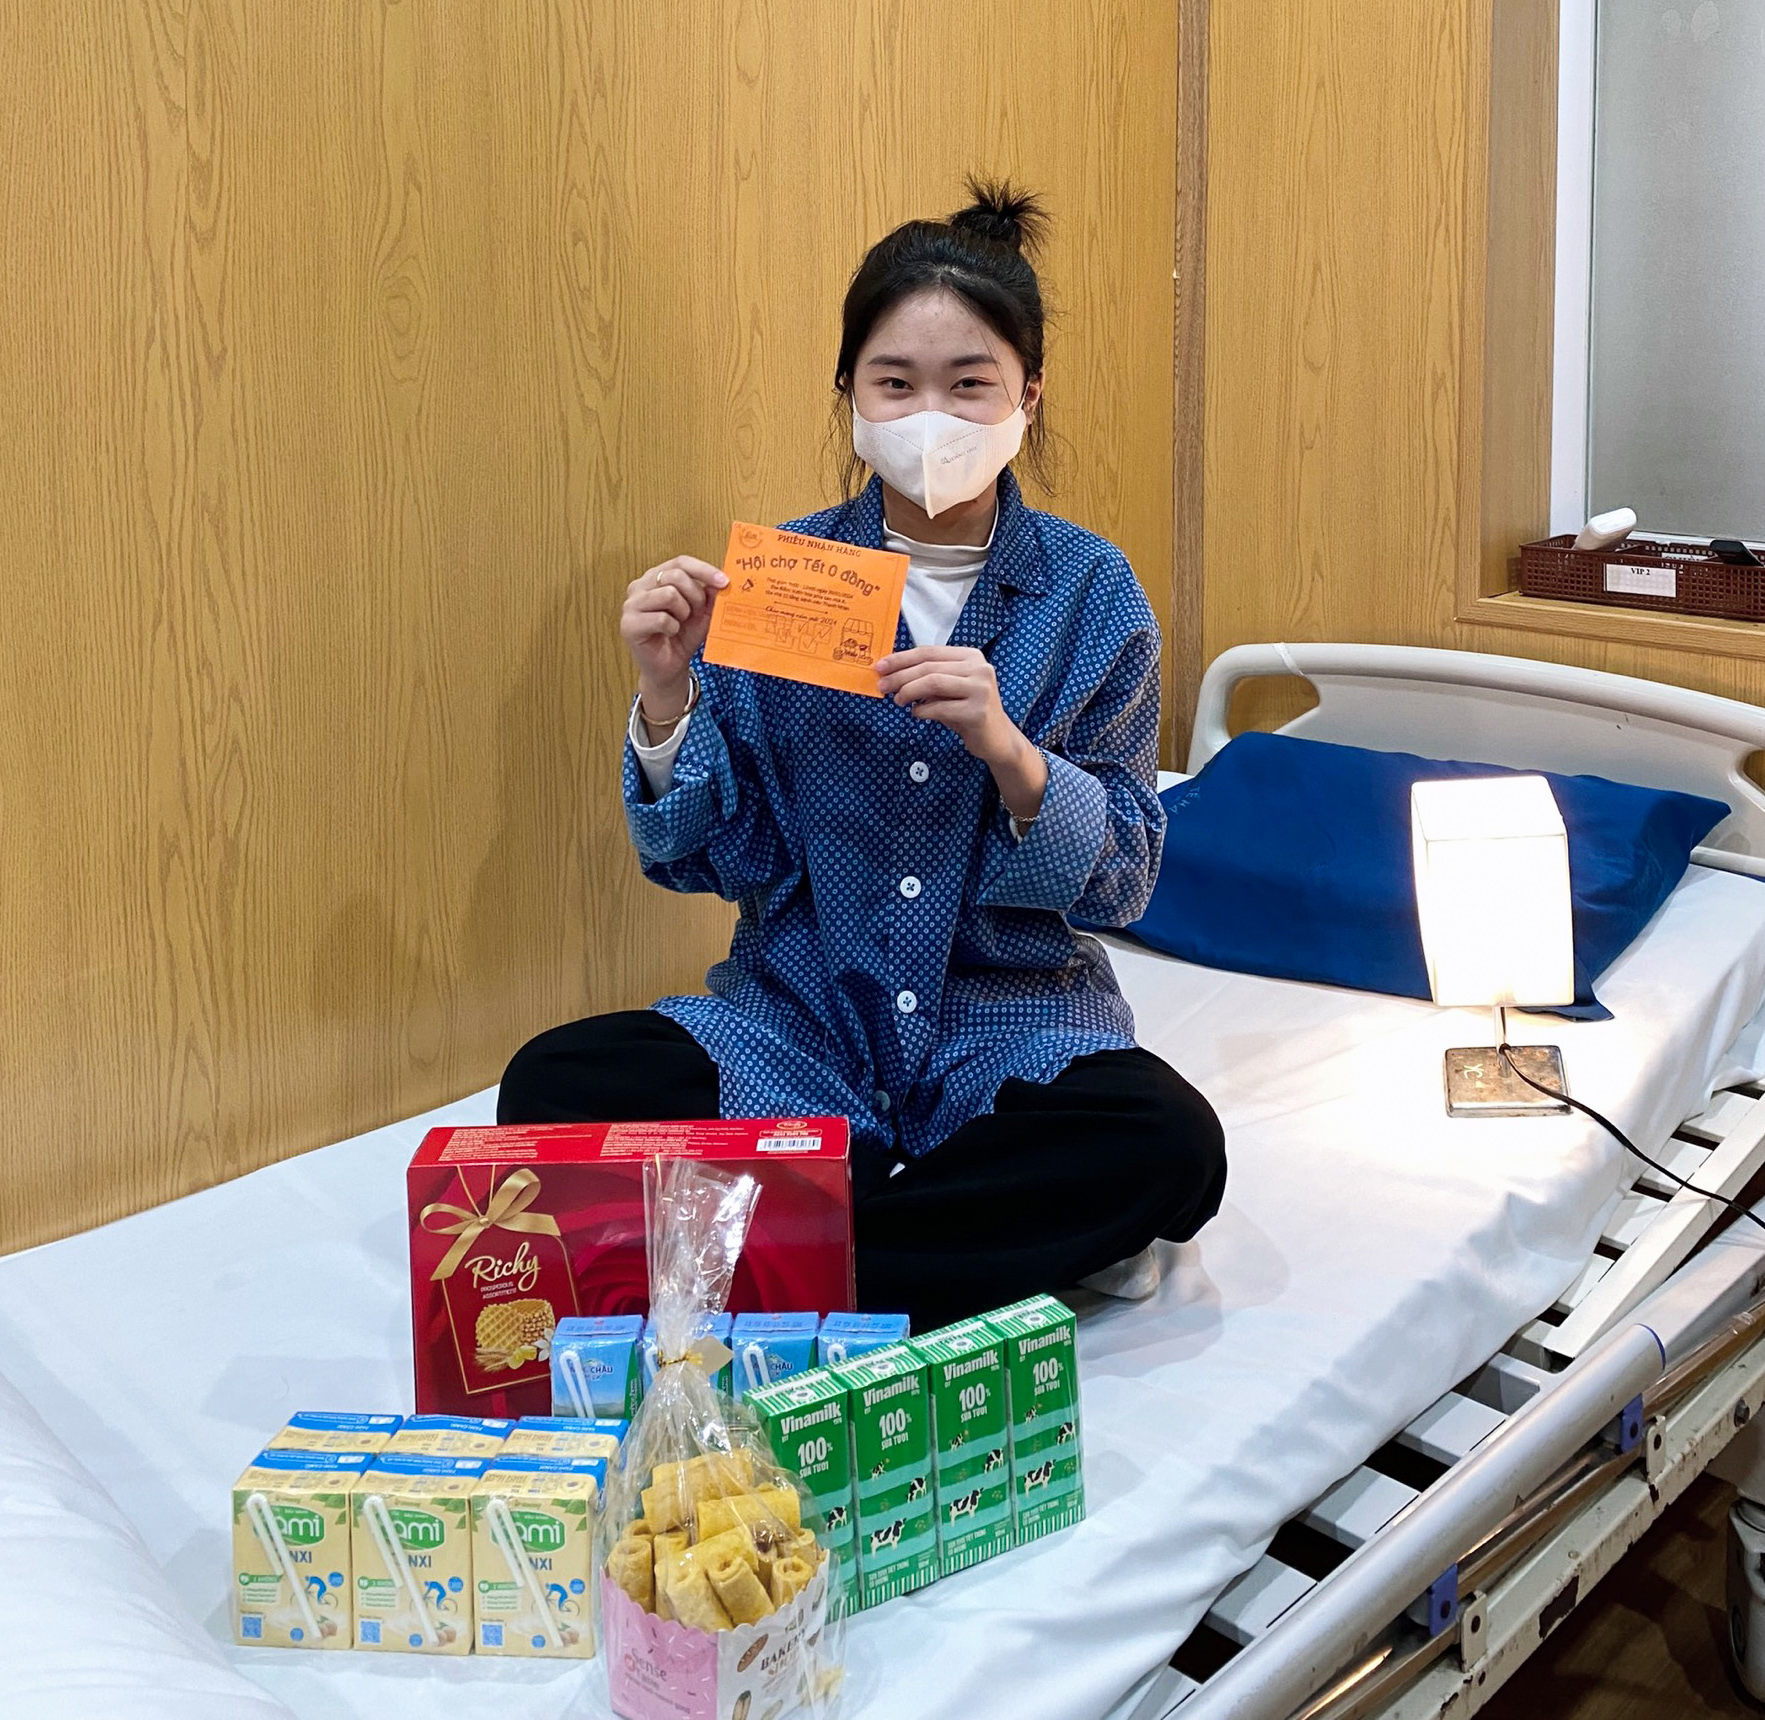 Ấm áp phiên chợ Tết 0 đồng cho bệnh nhân ở Hà Nội - Ảnh 12.